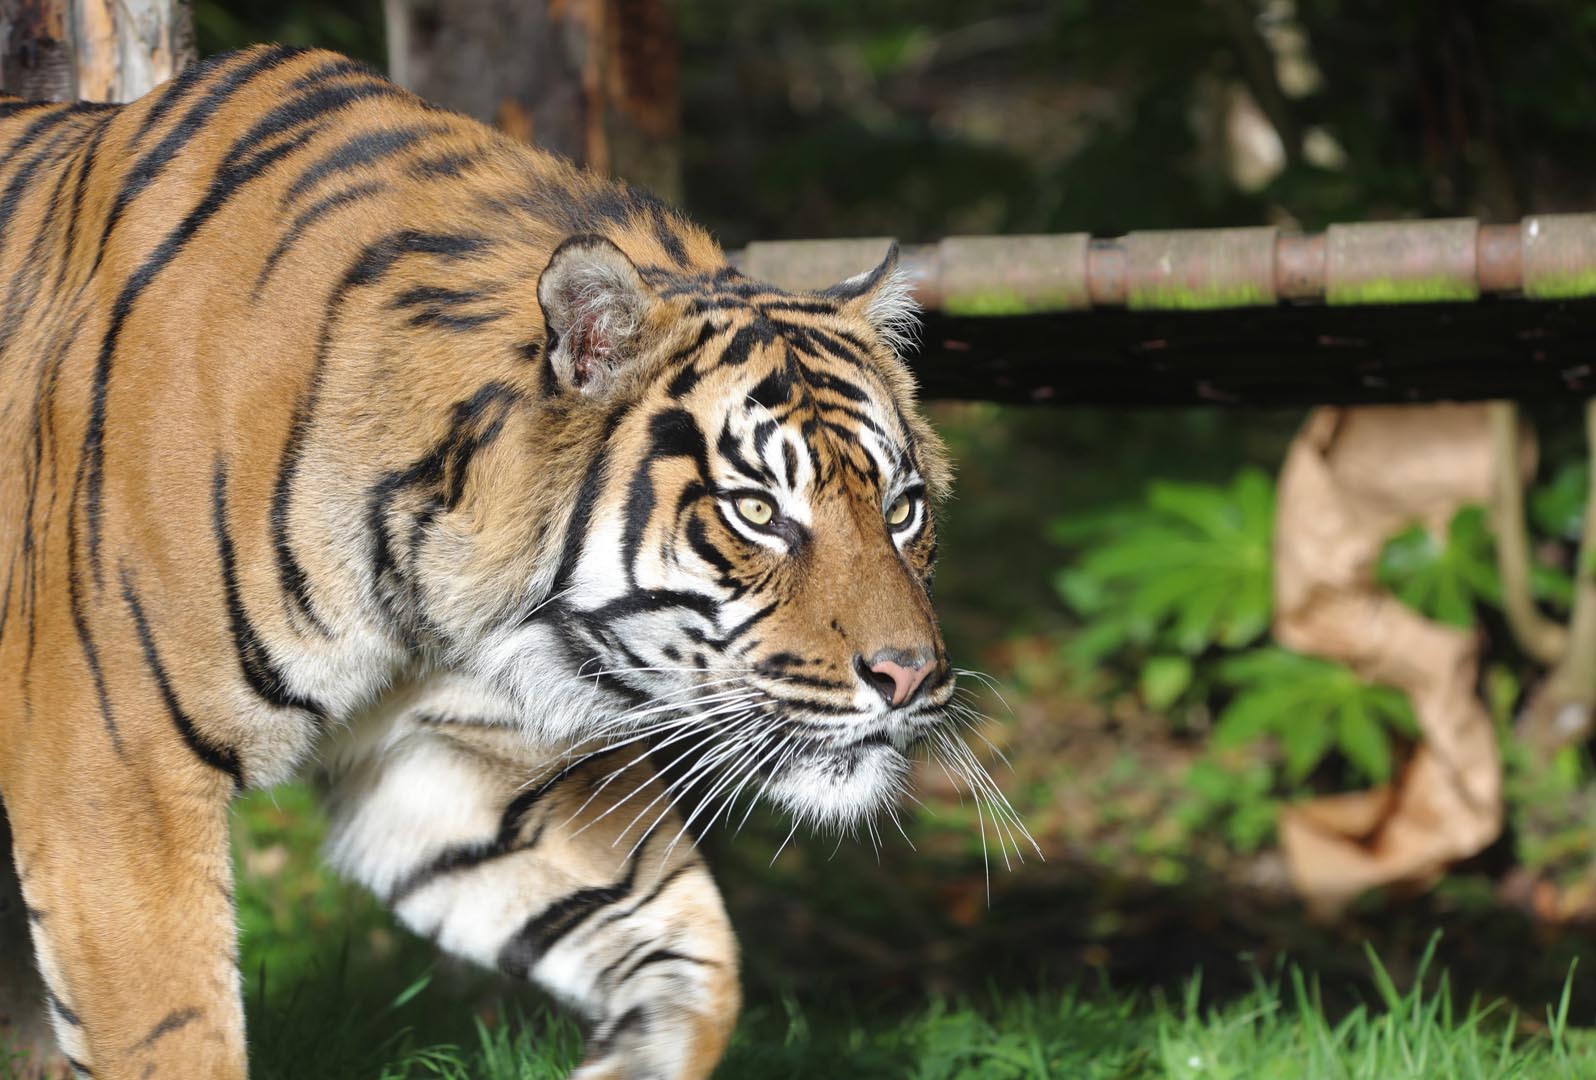 Sumatran tiger Lucu walking IMAGE: Amy Middleton 2024